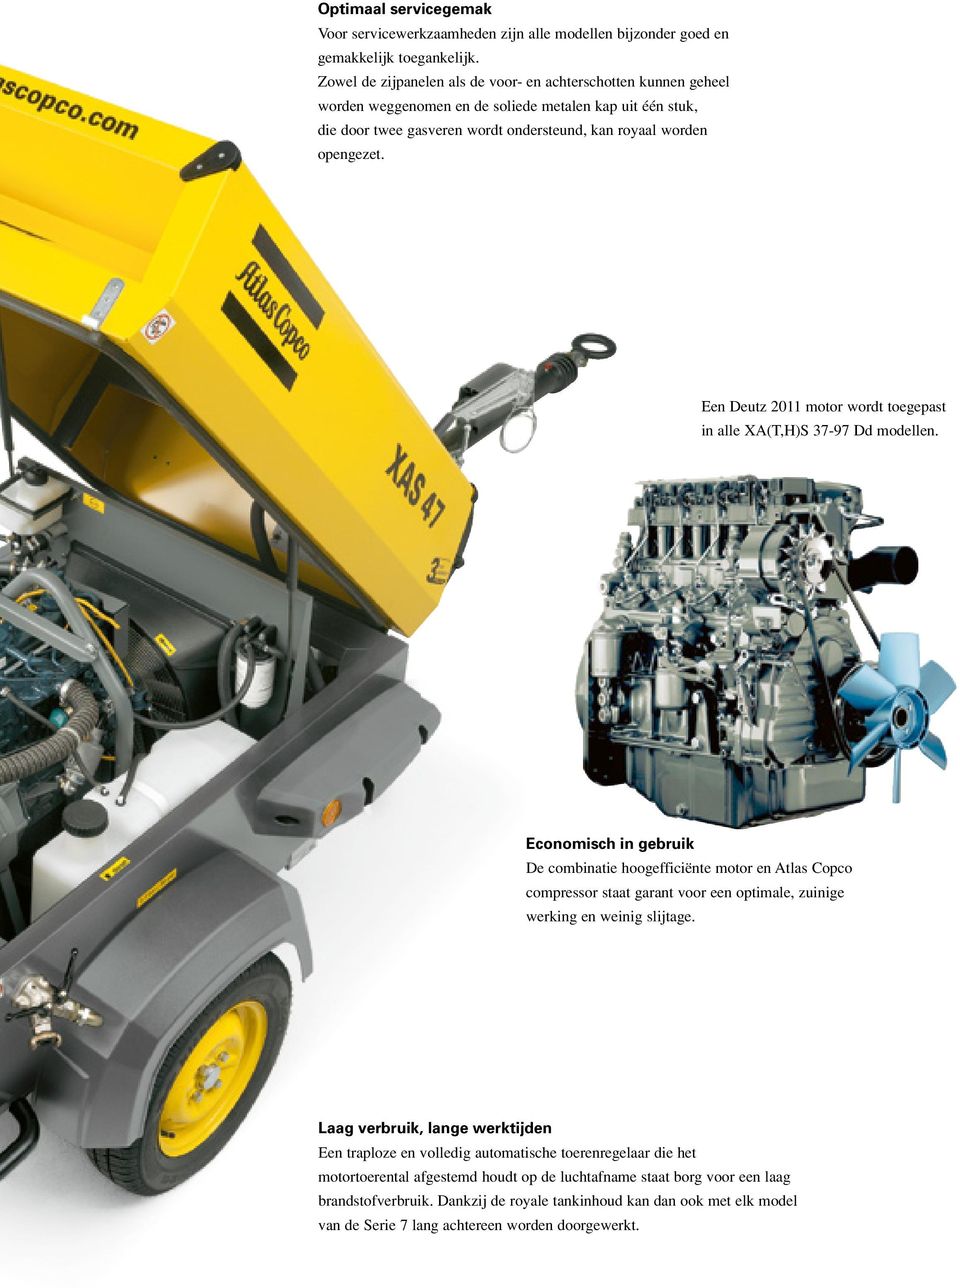 Een Deutz 2011 motor wordt toegepast in alle XA(T,H)S 37-97 Dd modellen.